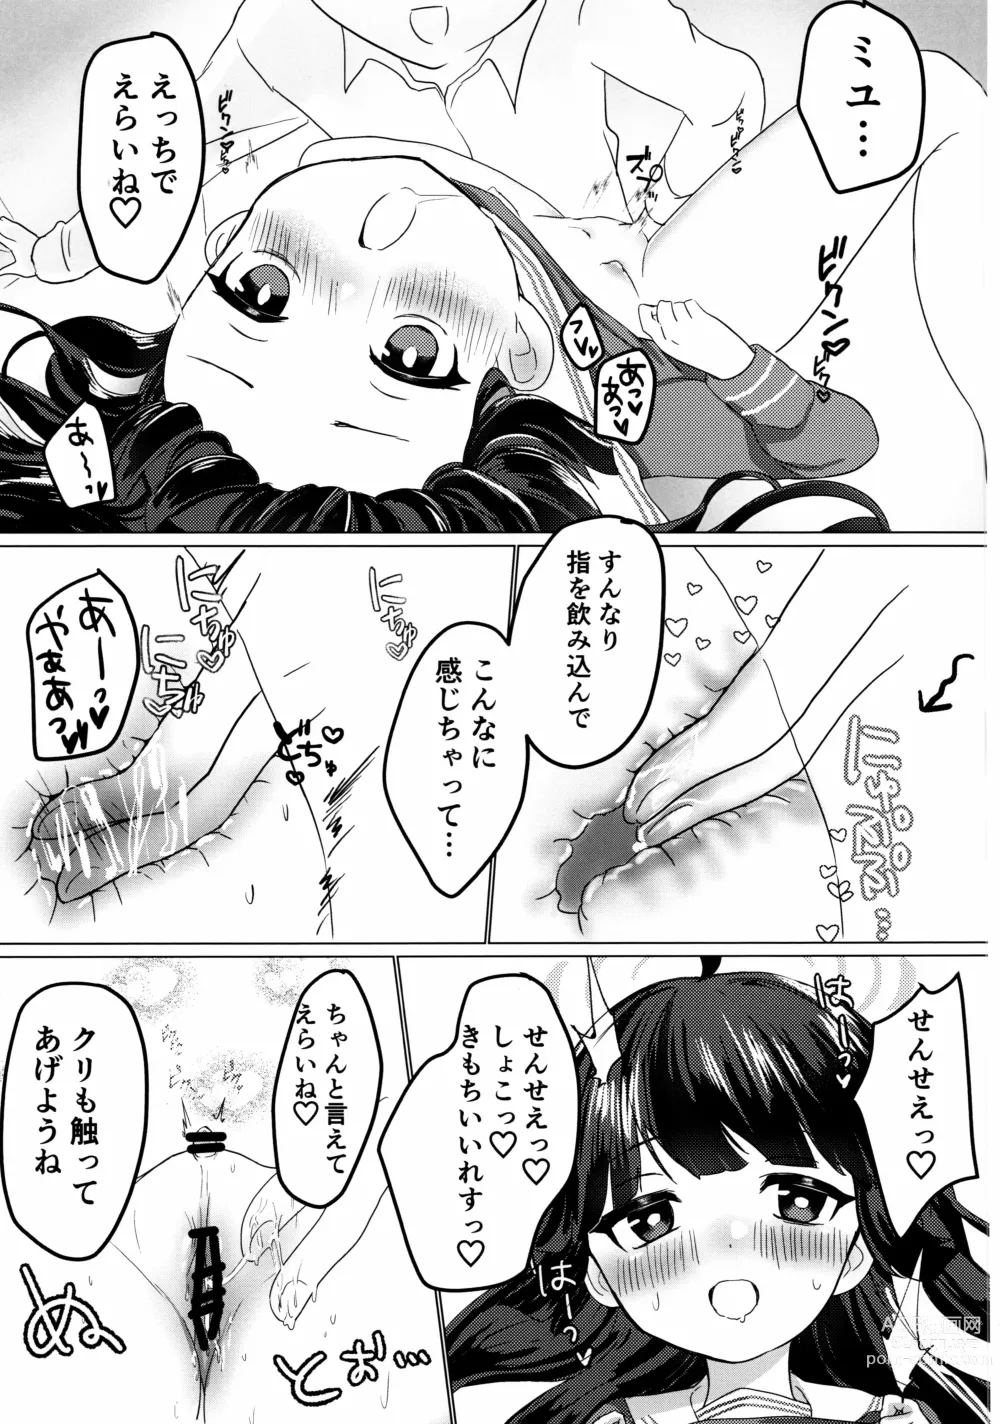 Page 12 of doujinshi Kasumizawa Miyu o Amayakashitai!